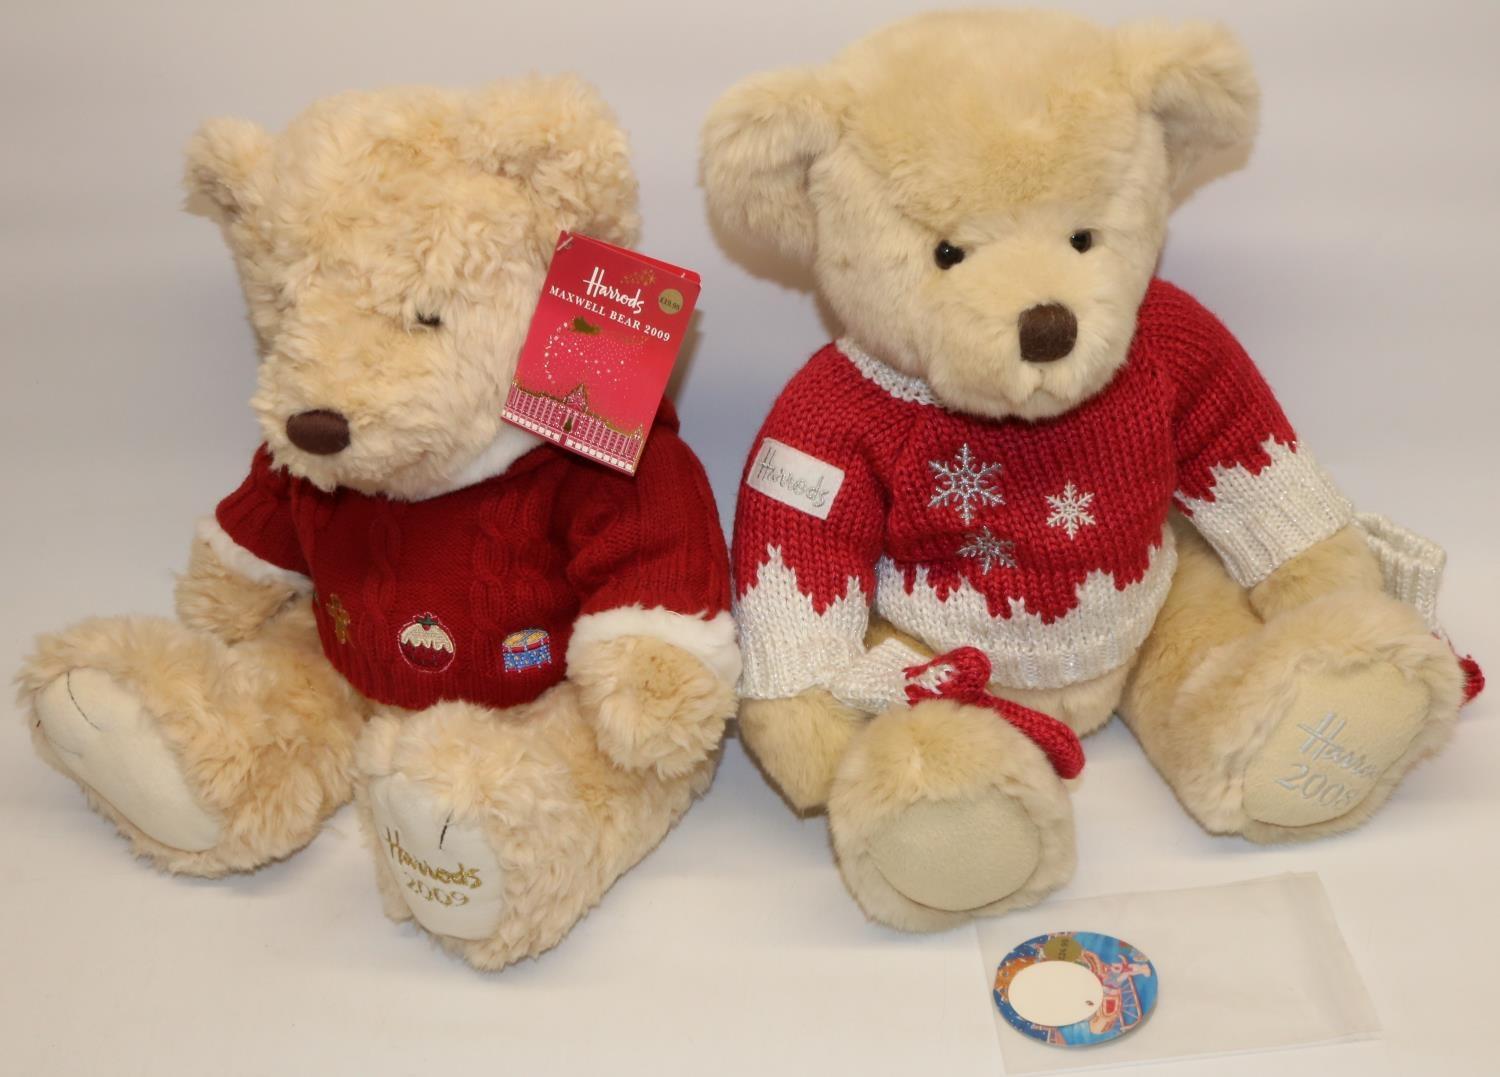 Two Harrods Christmas teddy bears: Oscar 2008, and Maxwell 2009